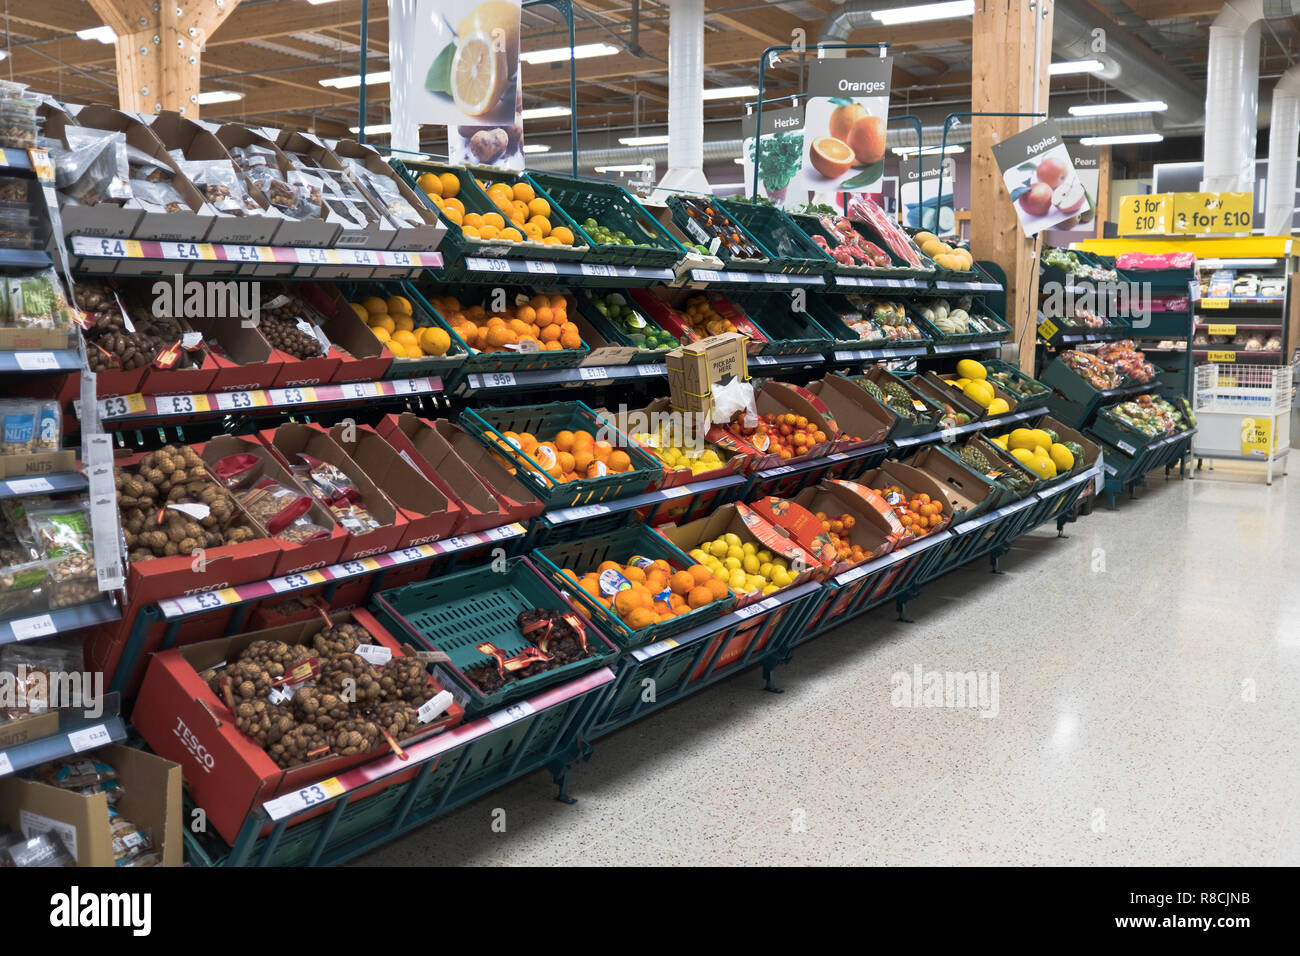 dh Tescos magasin allée étagères SUPERMARCHÉ TESCO Royaume-Uni SCOTLAND magasin de fruits afficher personne supermarchés Orkney à l'intérieur des légumes Banque D'Images